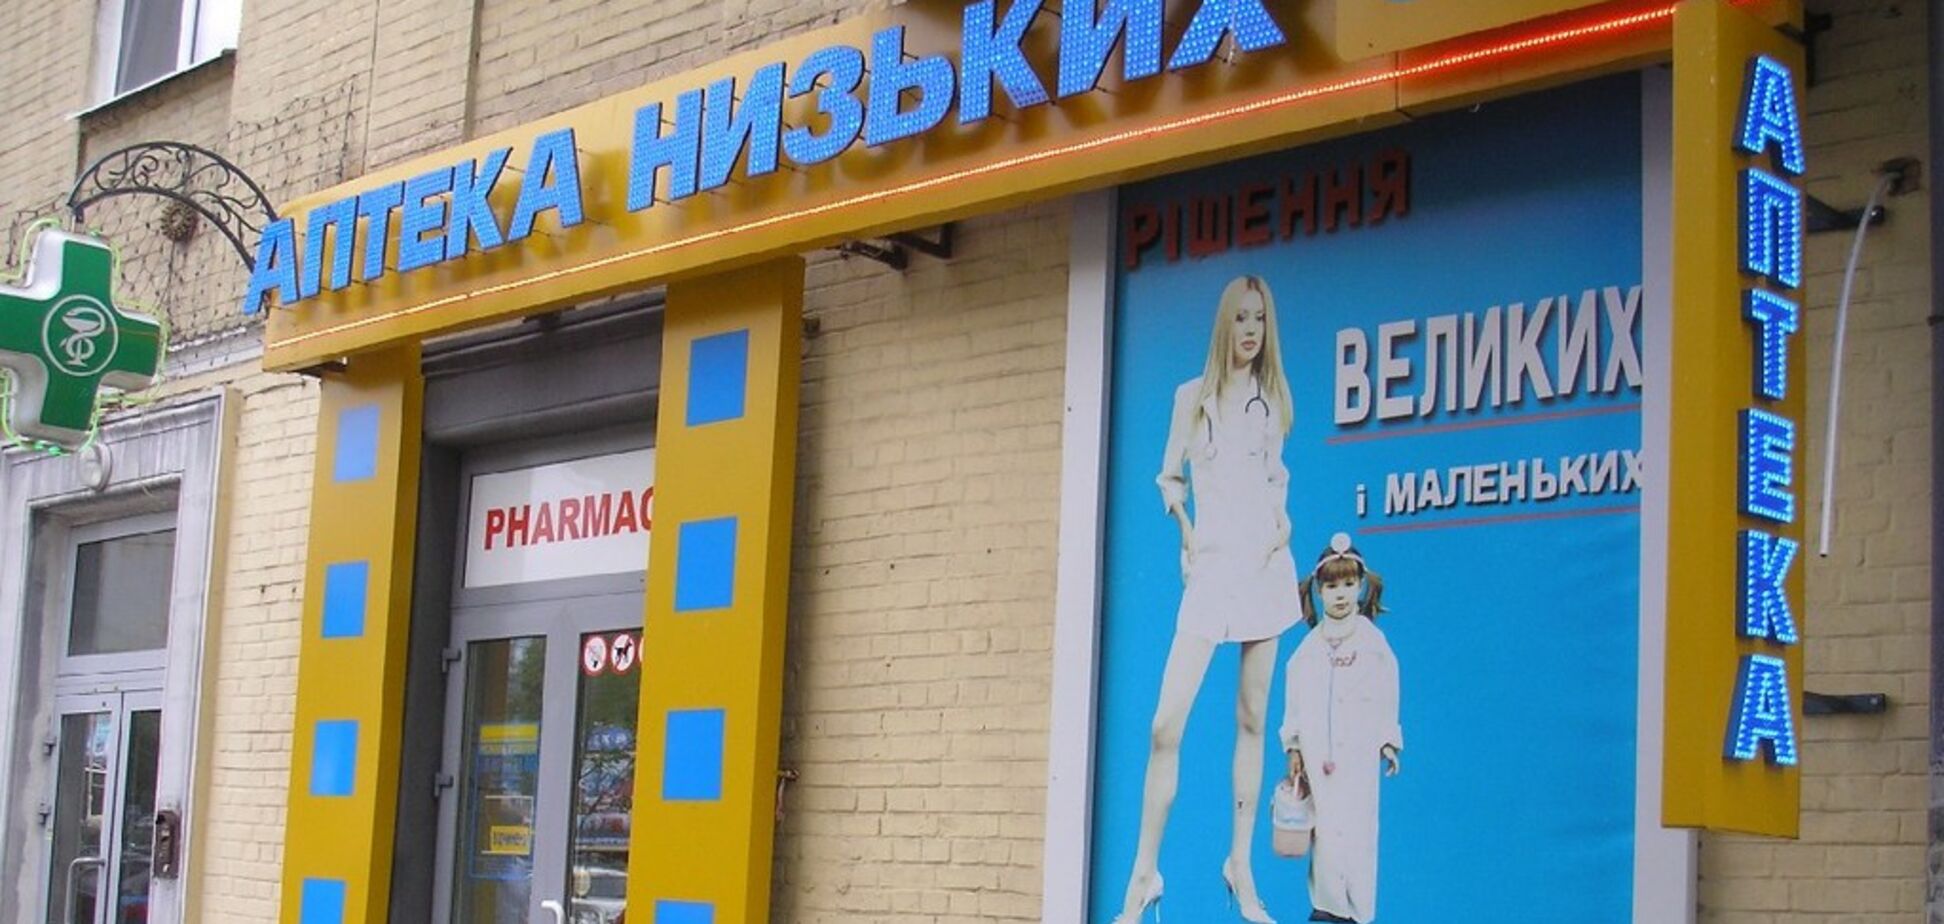 Перші роботизовані аптеки України дарують покупцям 'Робознижки'